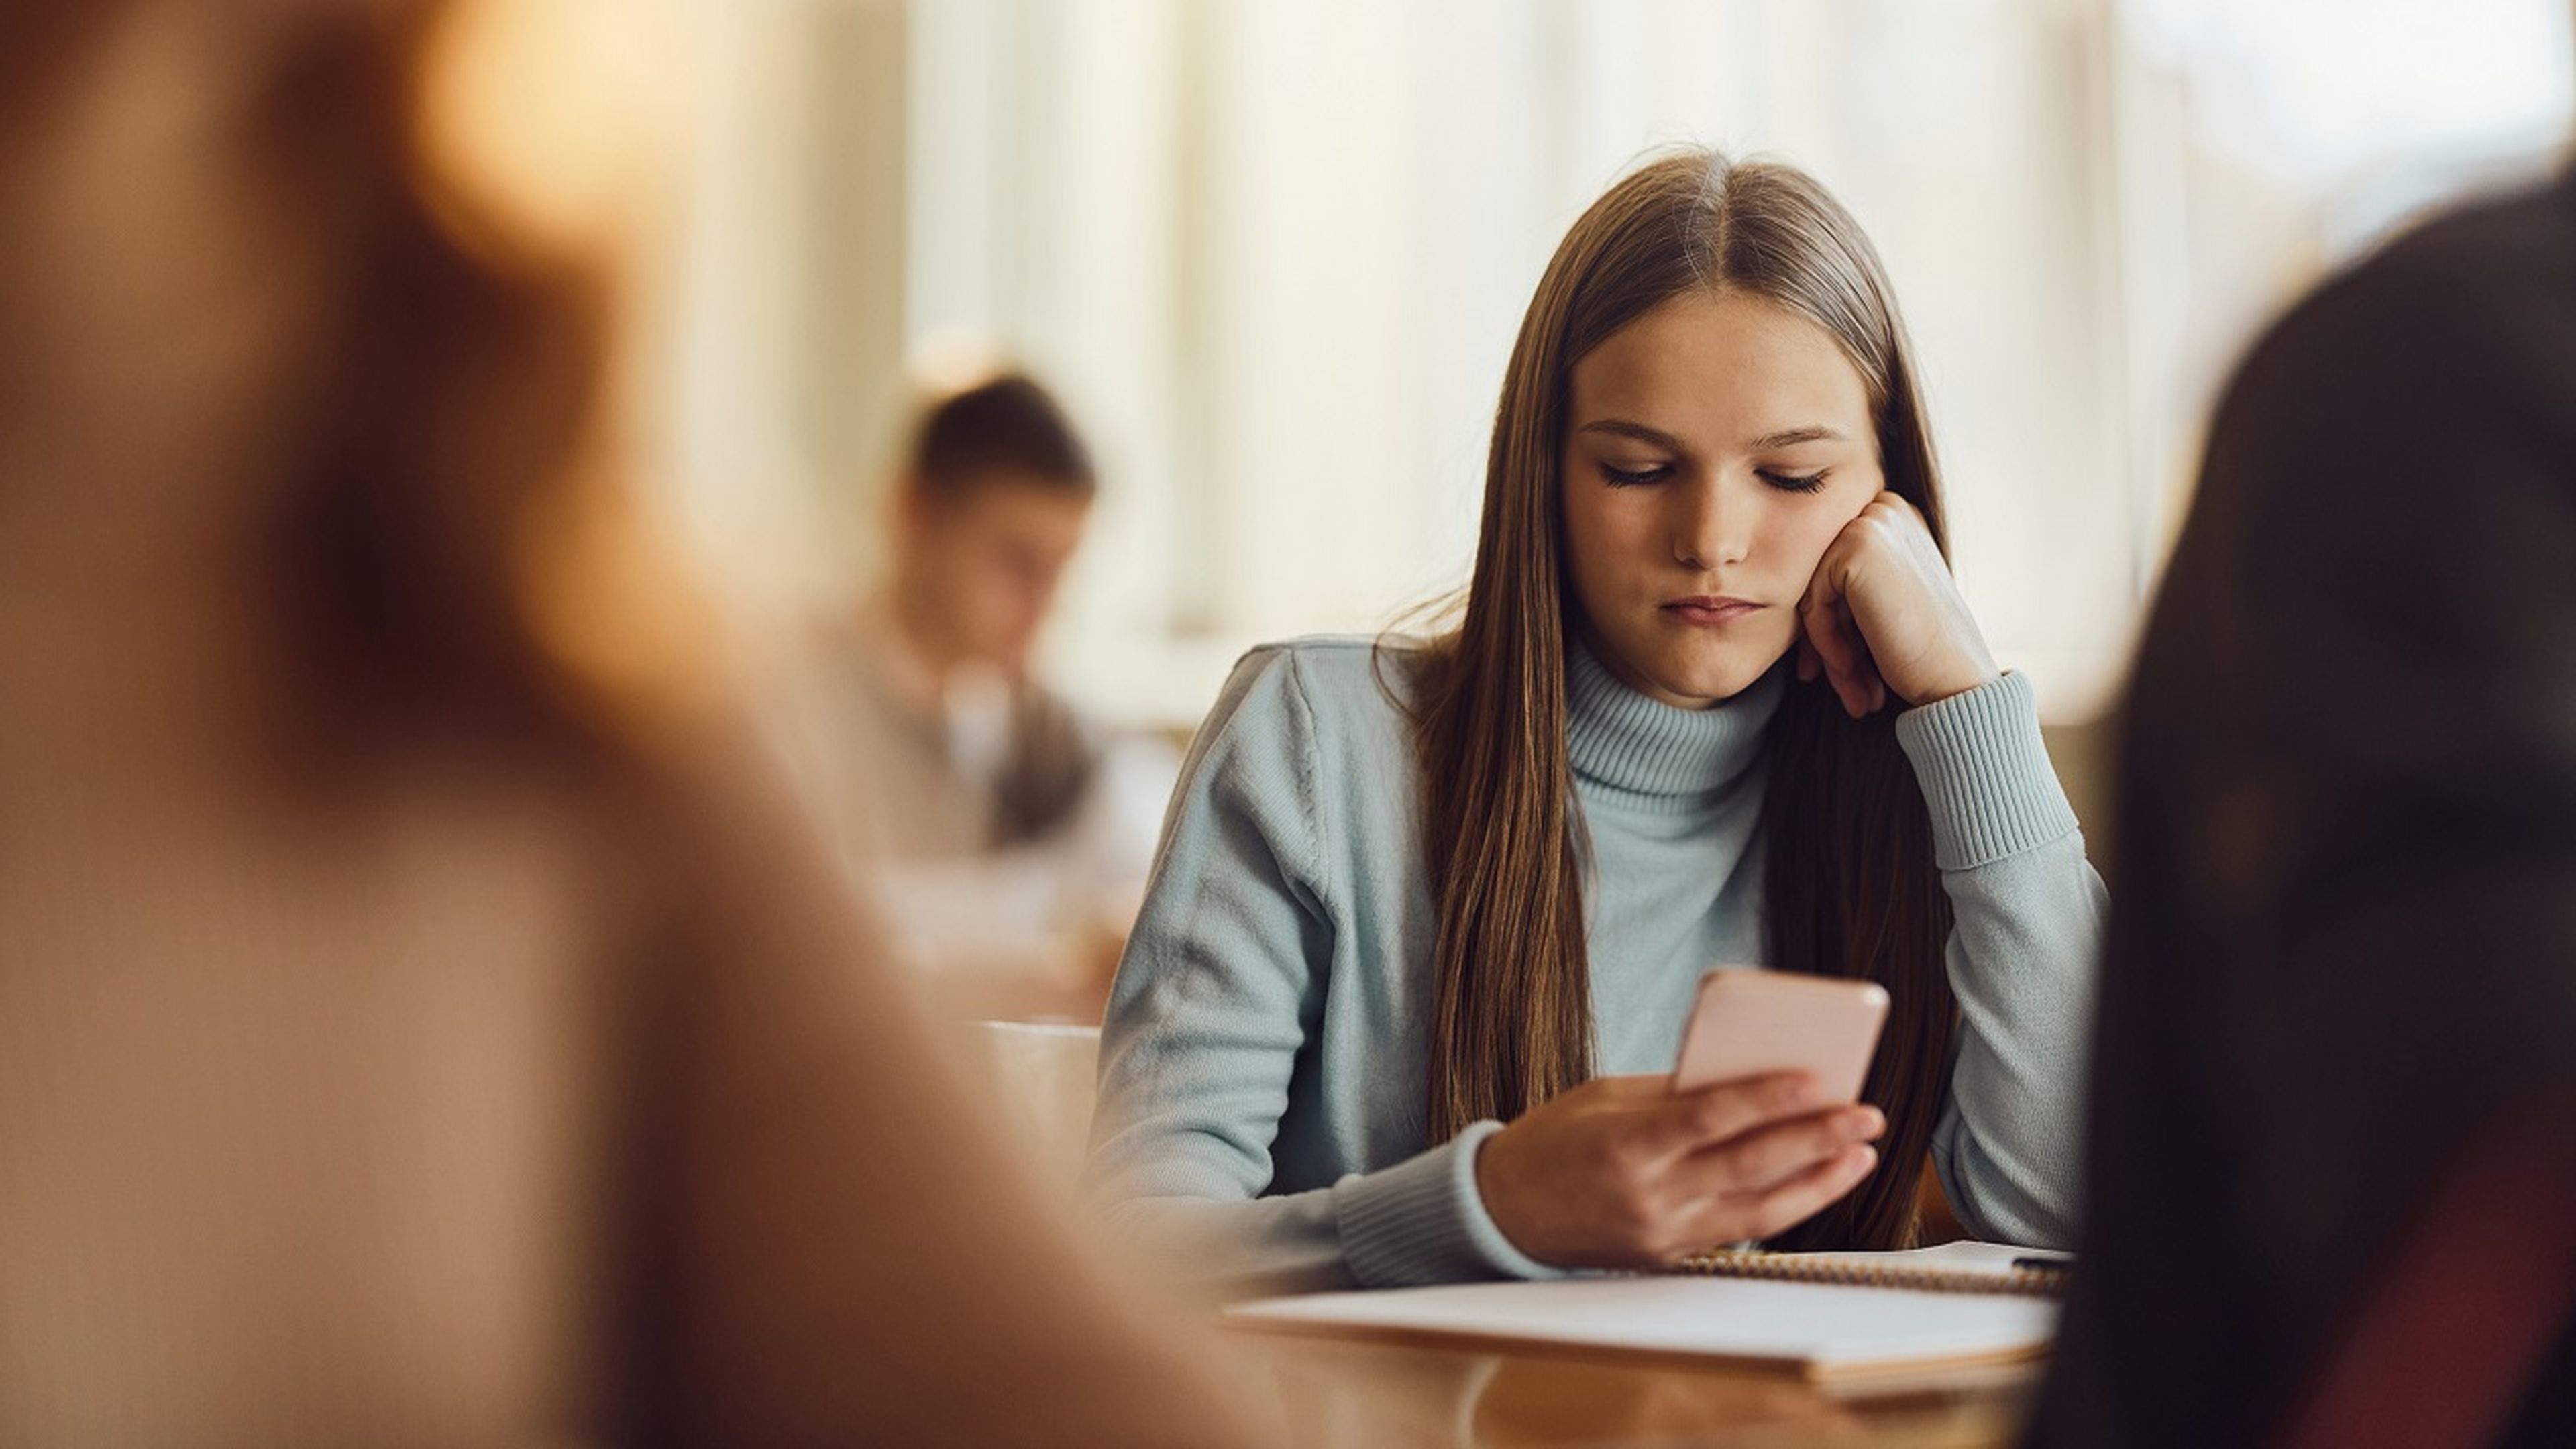 Los jóvenes que crecen con un smartphone son más propensos a la ansiedad y la depresión, pero puede evitarse